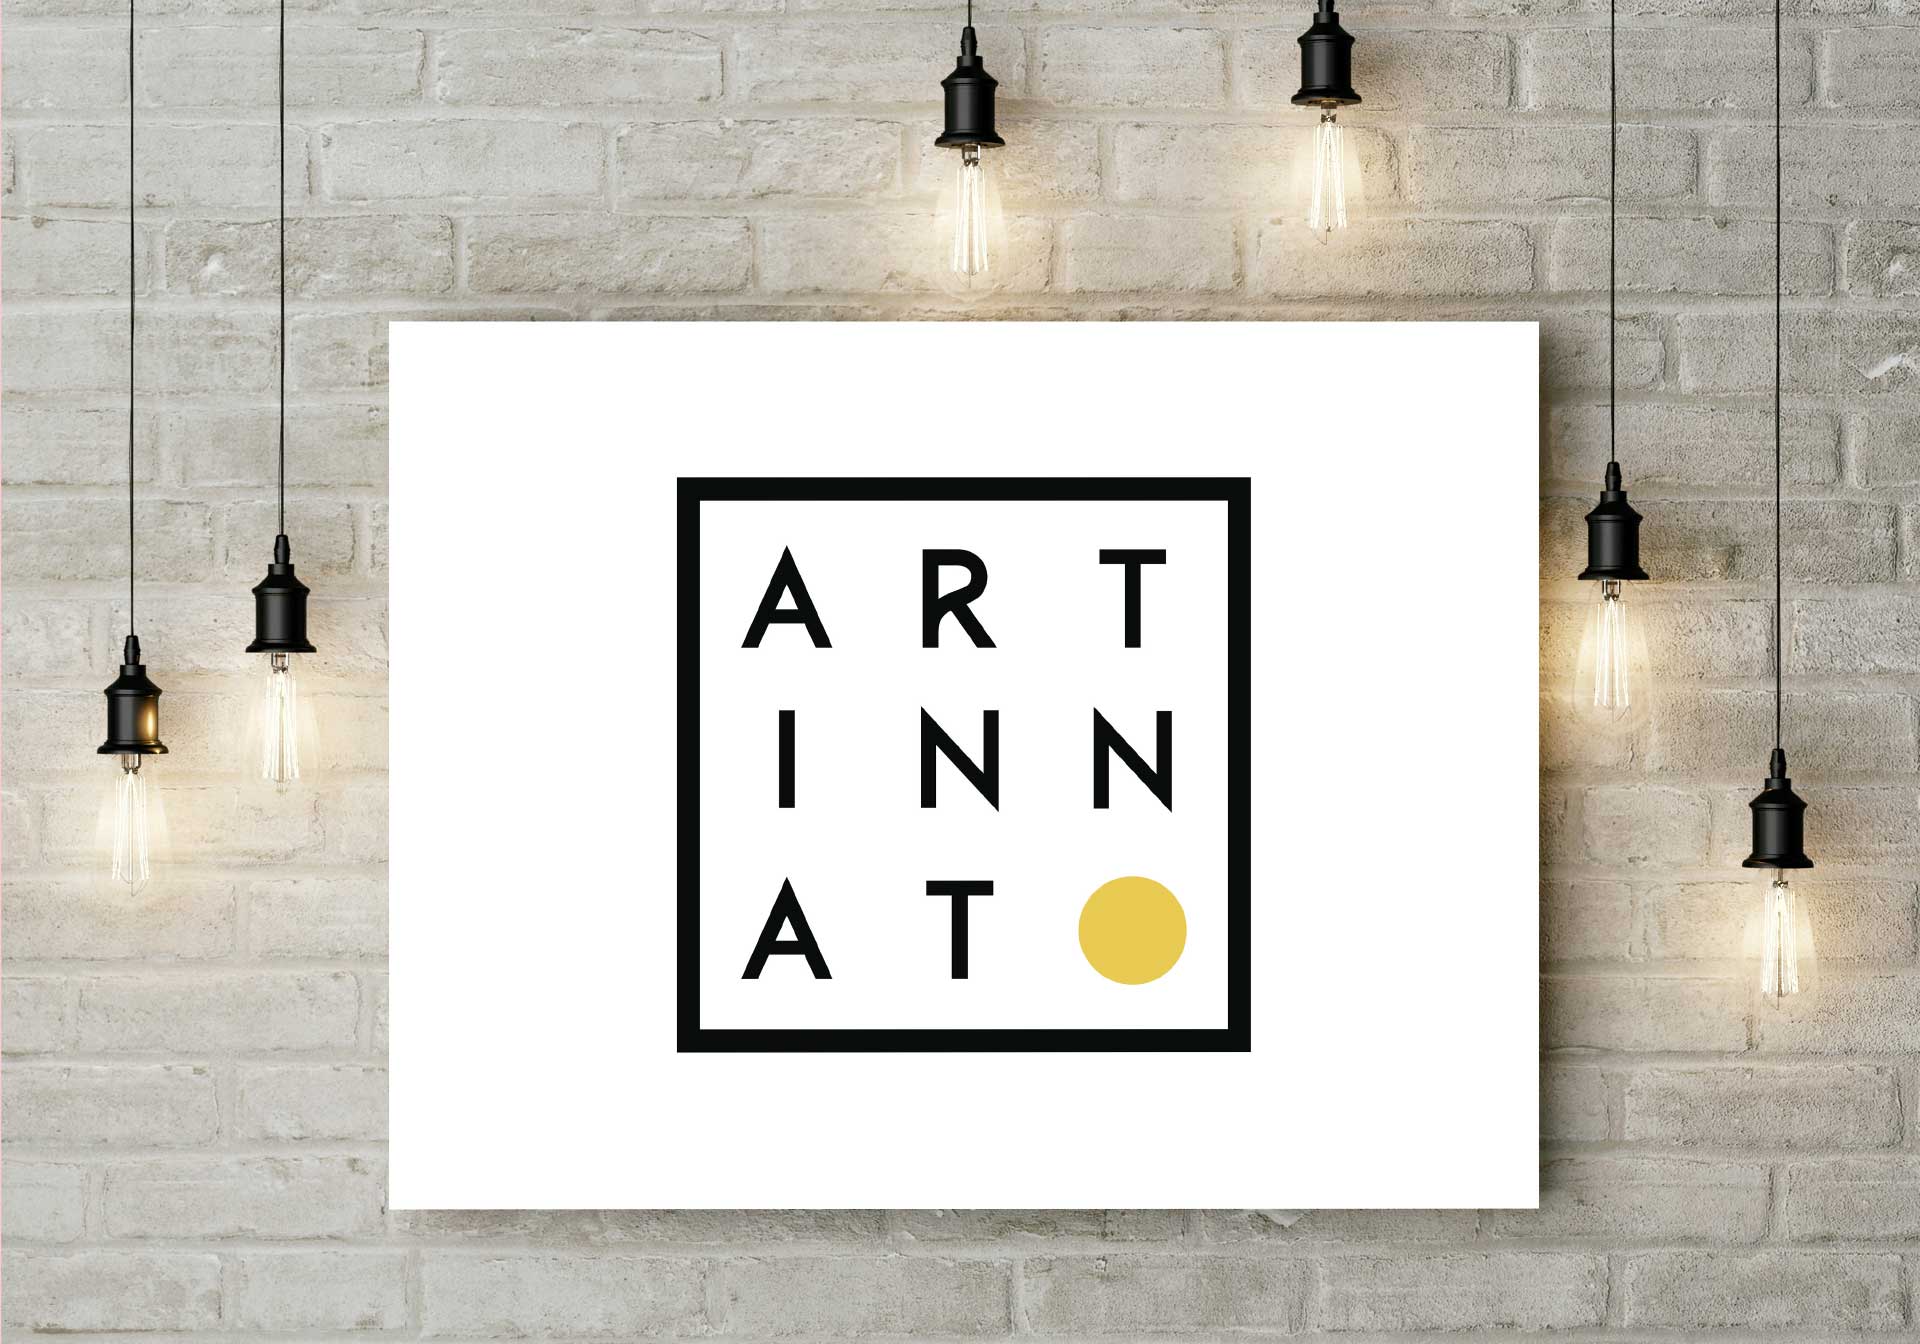 Branding logo ART INNAT